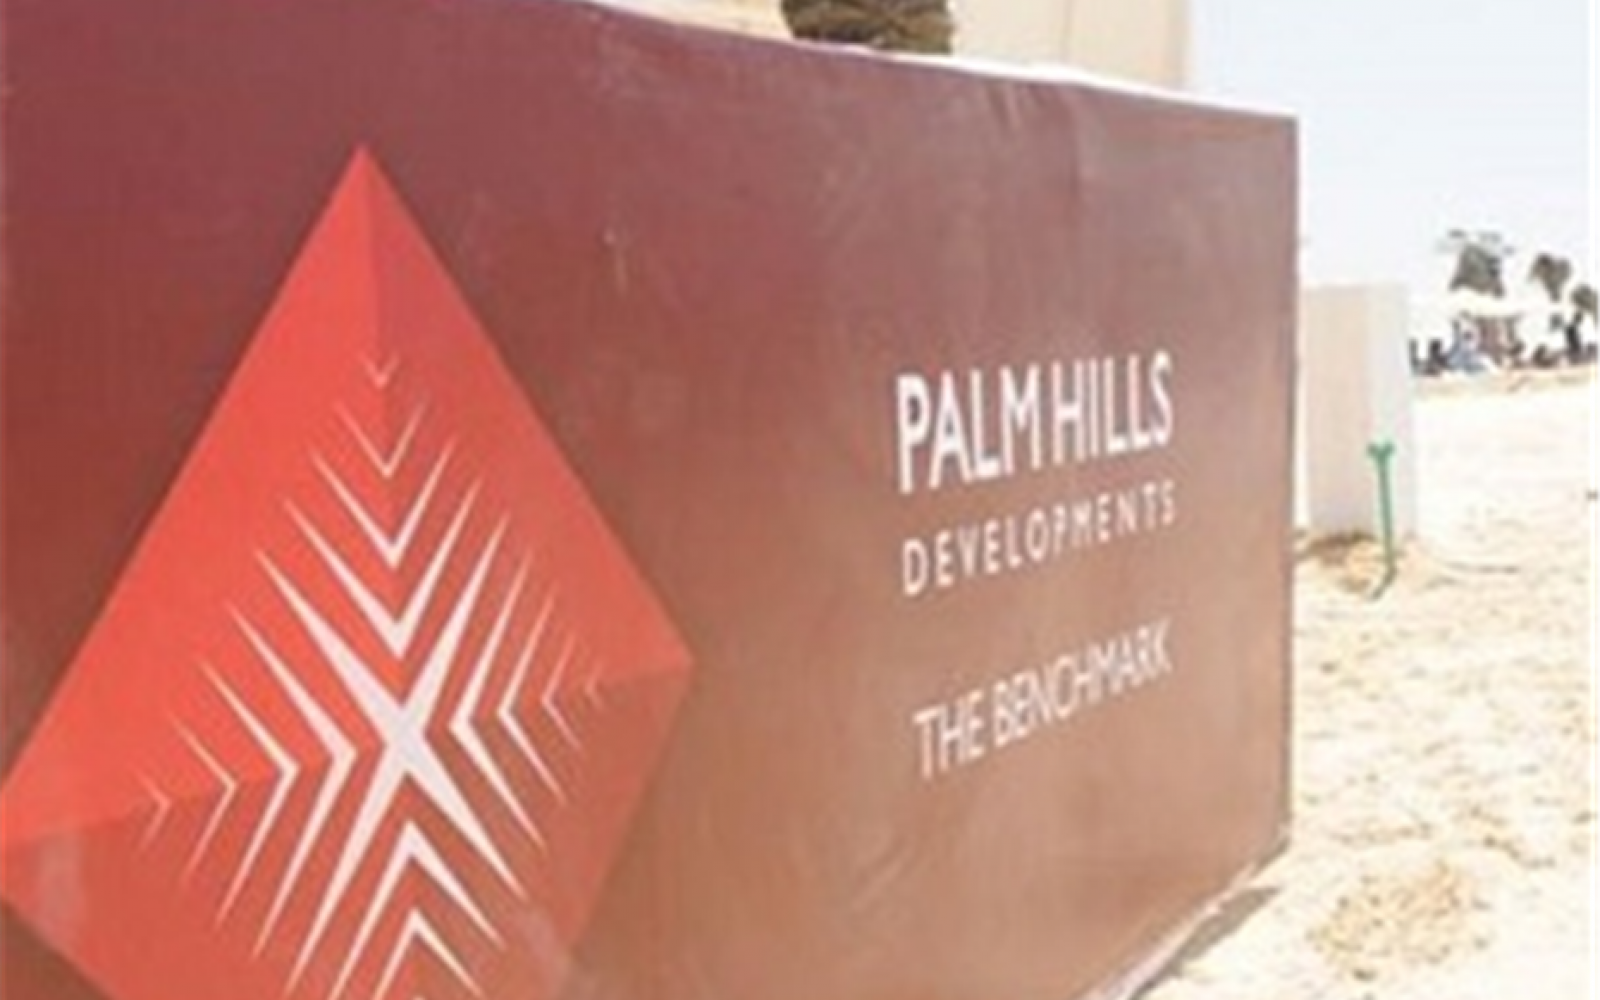 مستثمرون سعوديون يسعون للاستحواذ على حصة "العربي الأفريقى" في بالم هيلز للتعمير